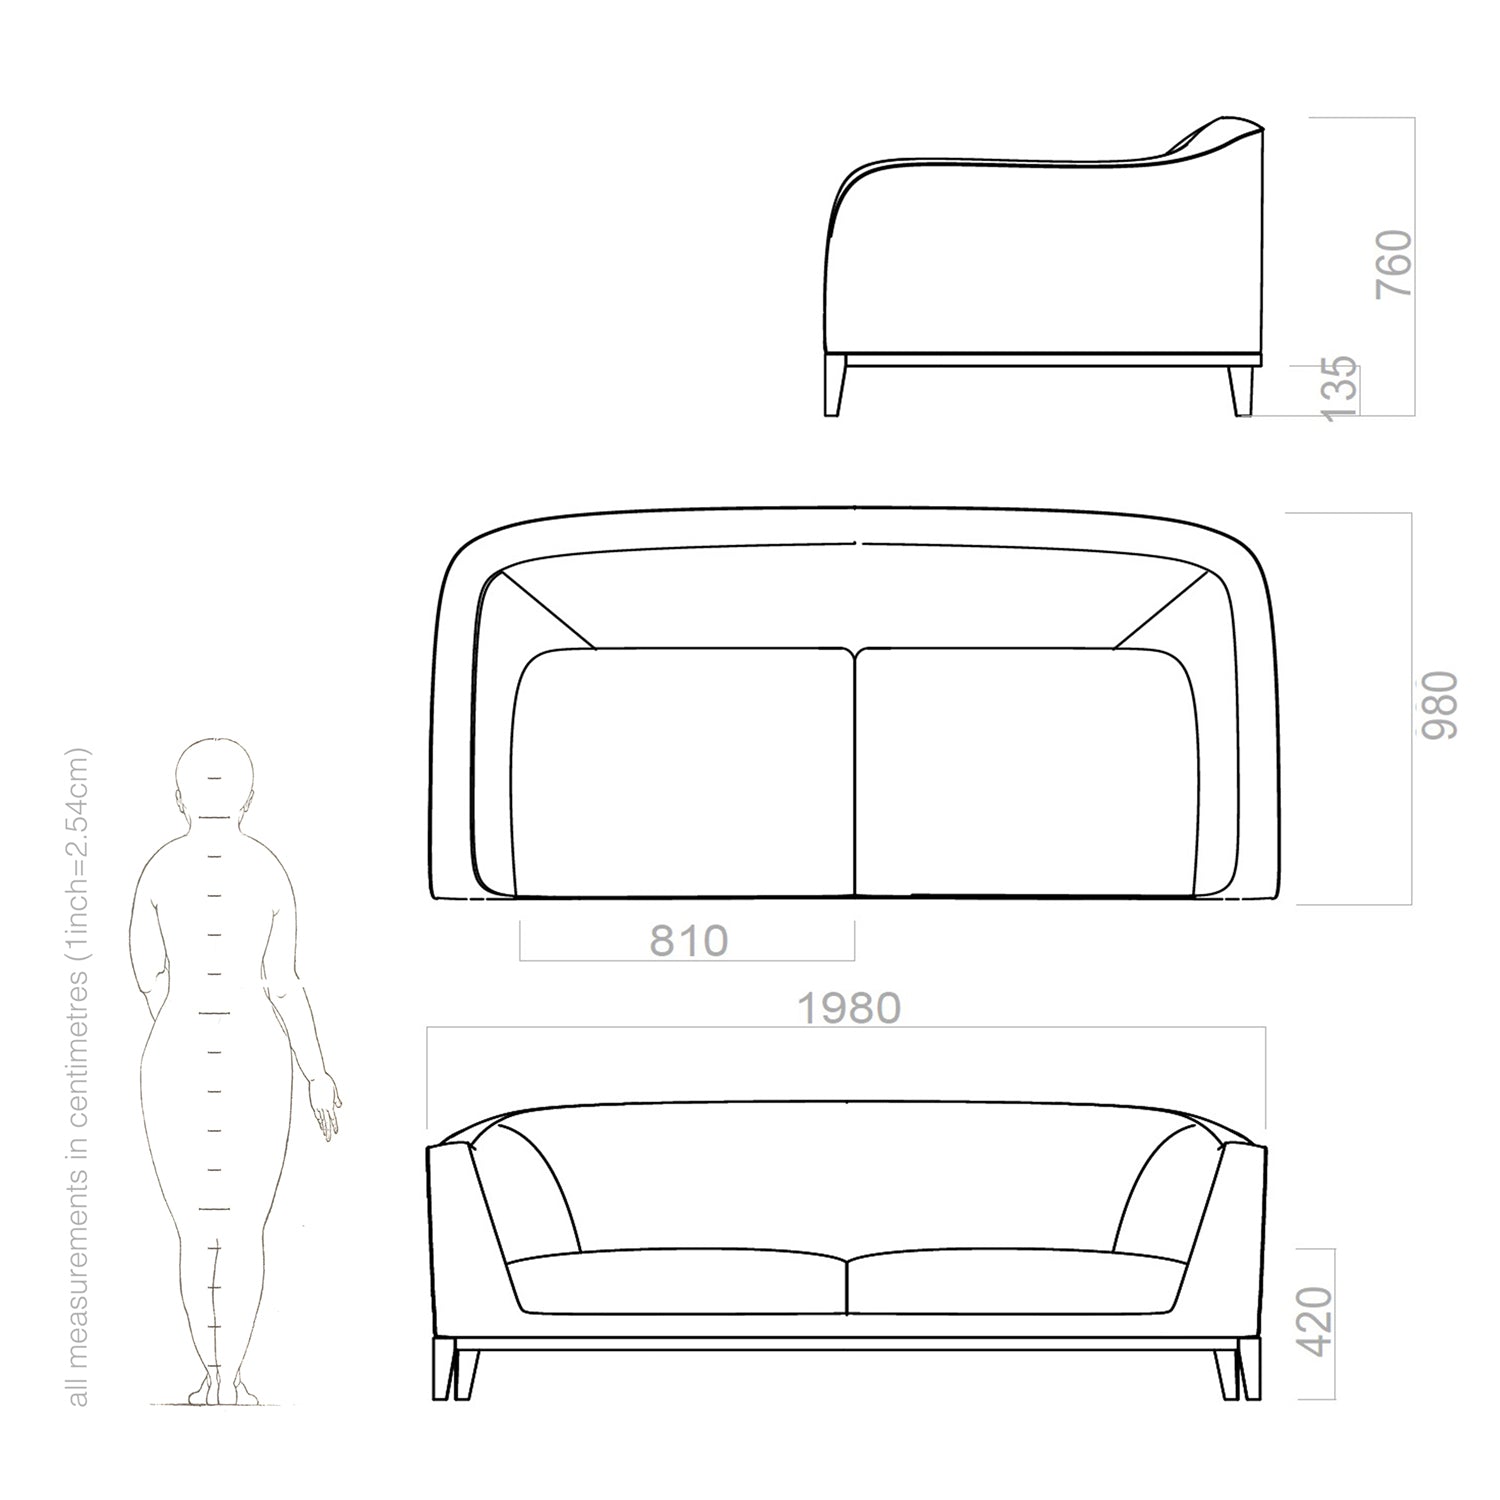 zeno sofa drawing and dimensions